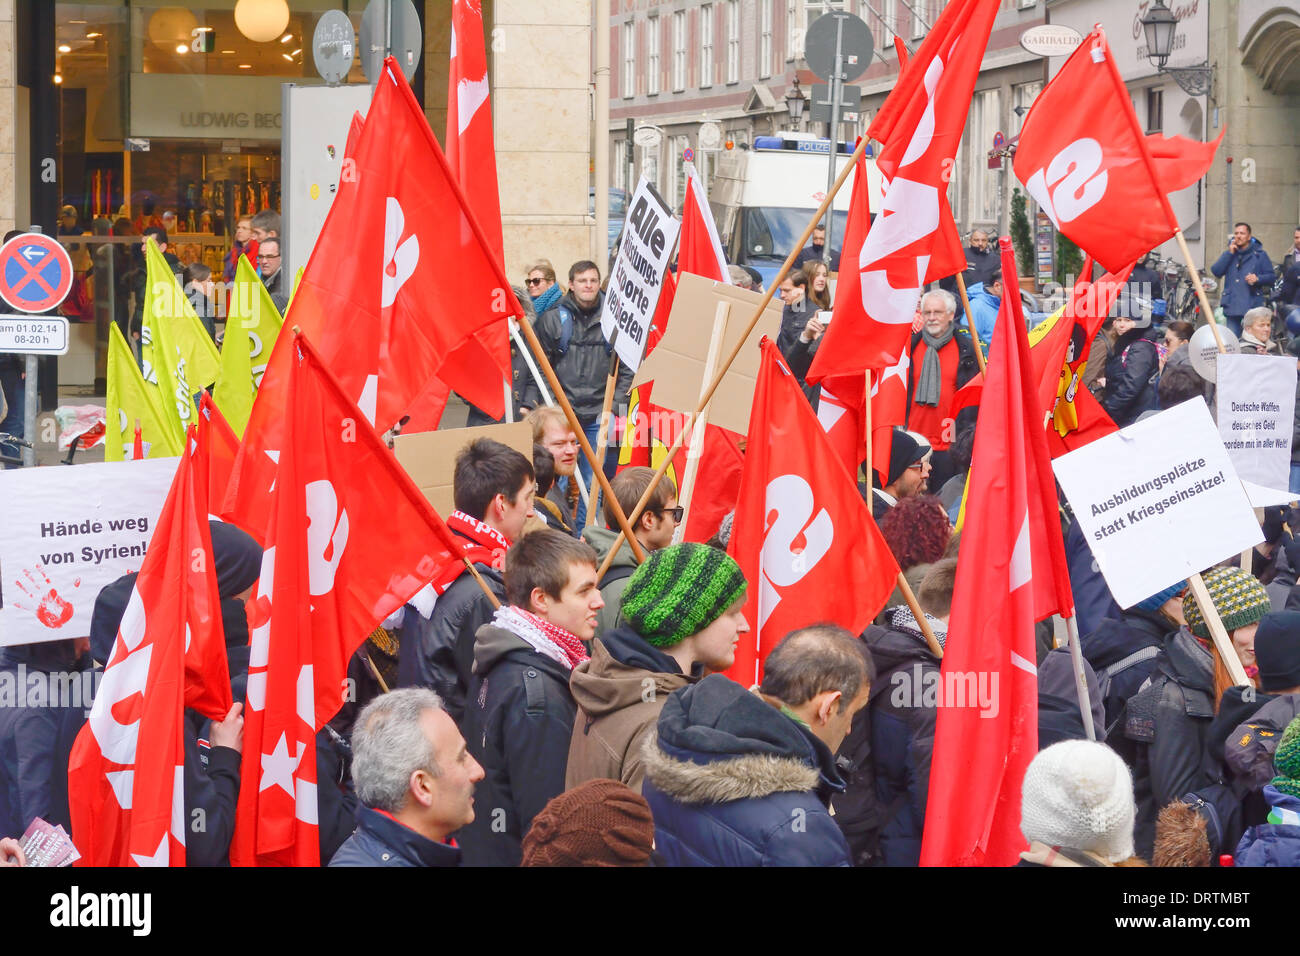 München, Deutschland – 1. Februar: Demonstranten auf der Münchner Sicherheitskonferenz im Rahmen ihrer Jahrestagung. Februar 1, 2014 in München, Deutschland Stockfoto